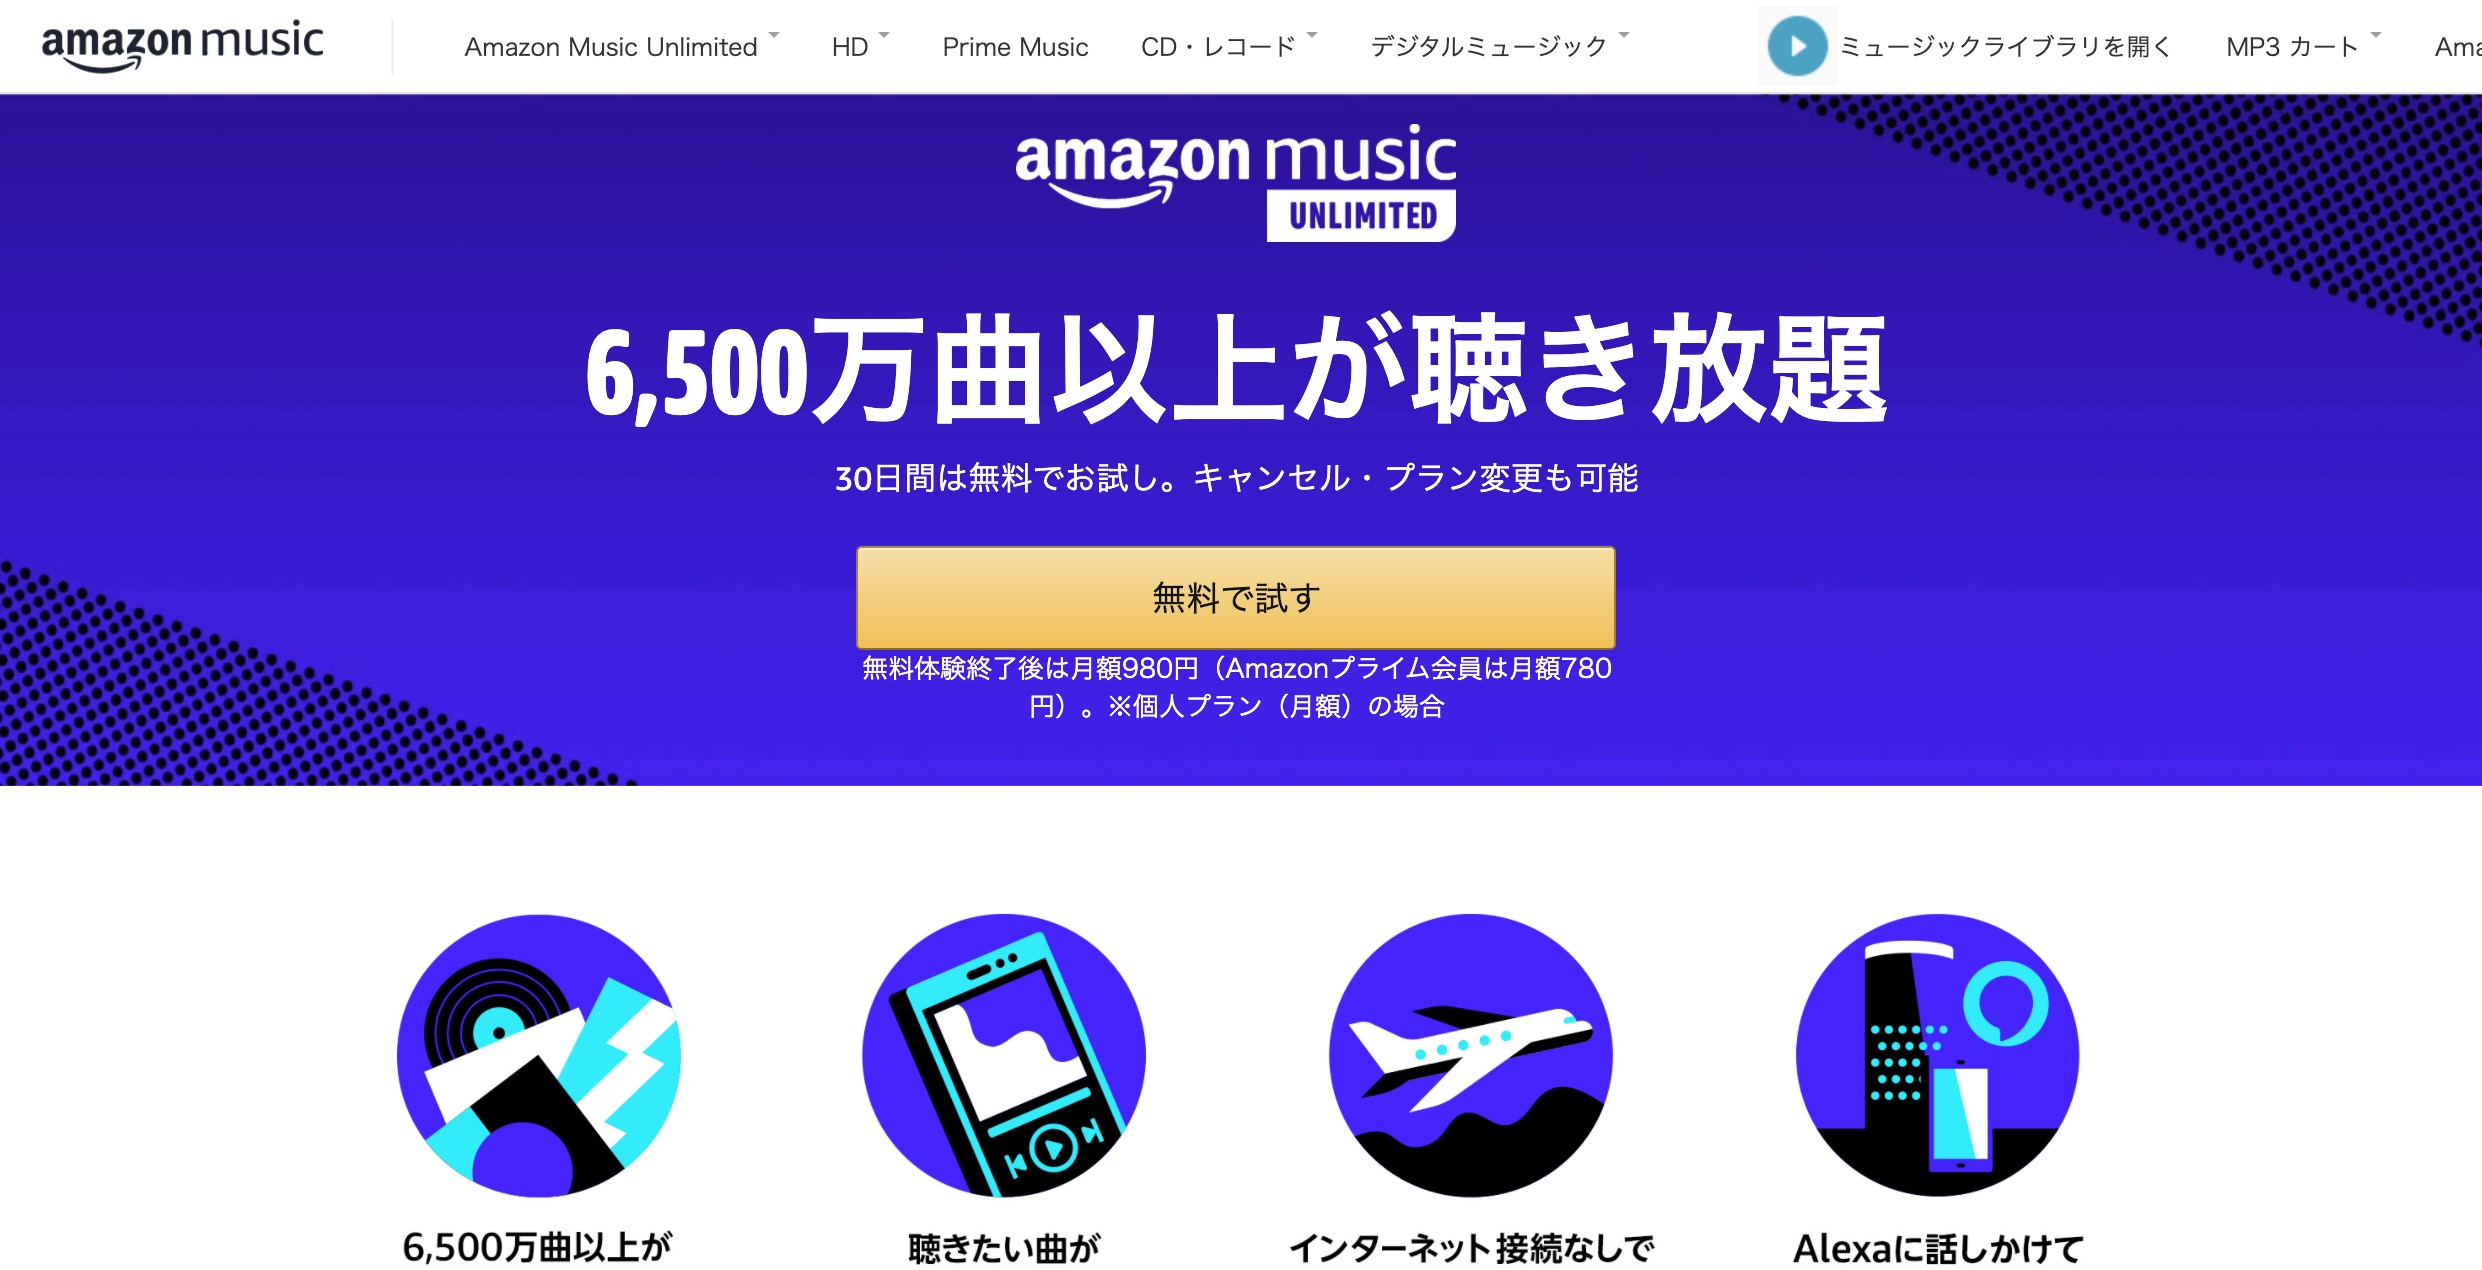 Amazon Music Unlimitedトップページ